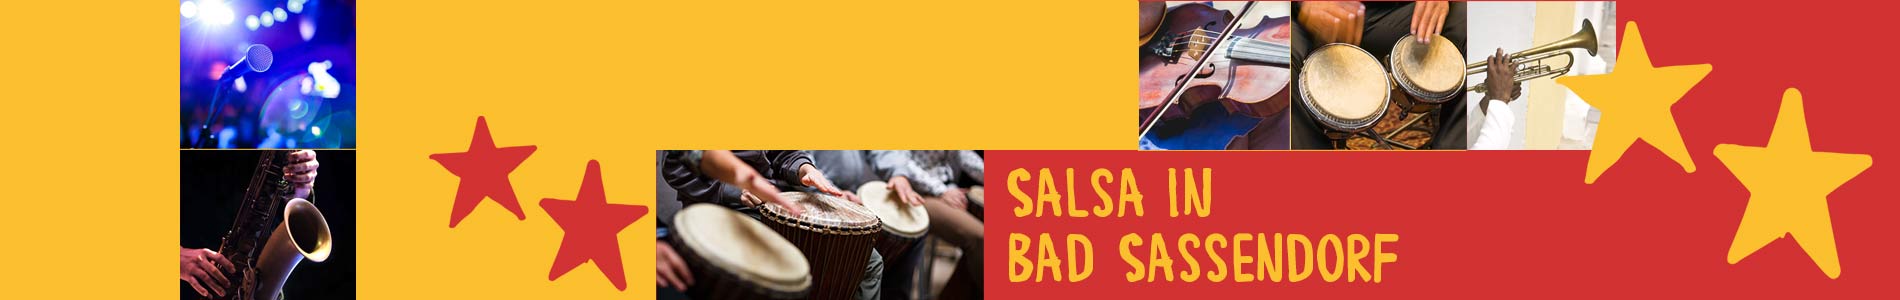 Salsa in Bad Sassendorf – Salsa lernen und tanzen, Tanzkurse, Partys, Veranstaltungen